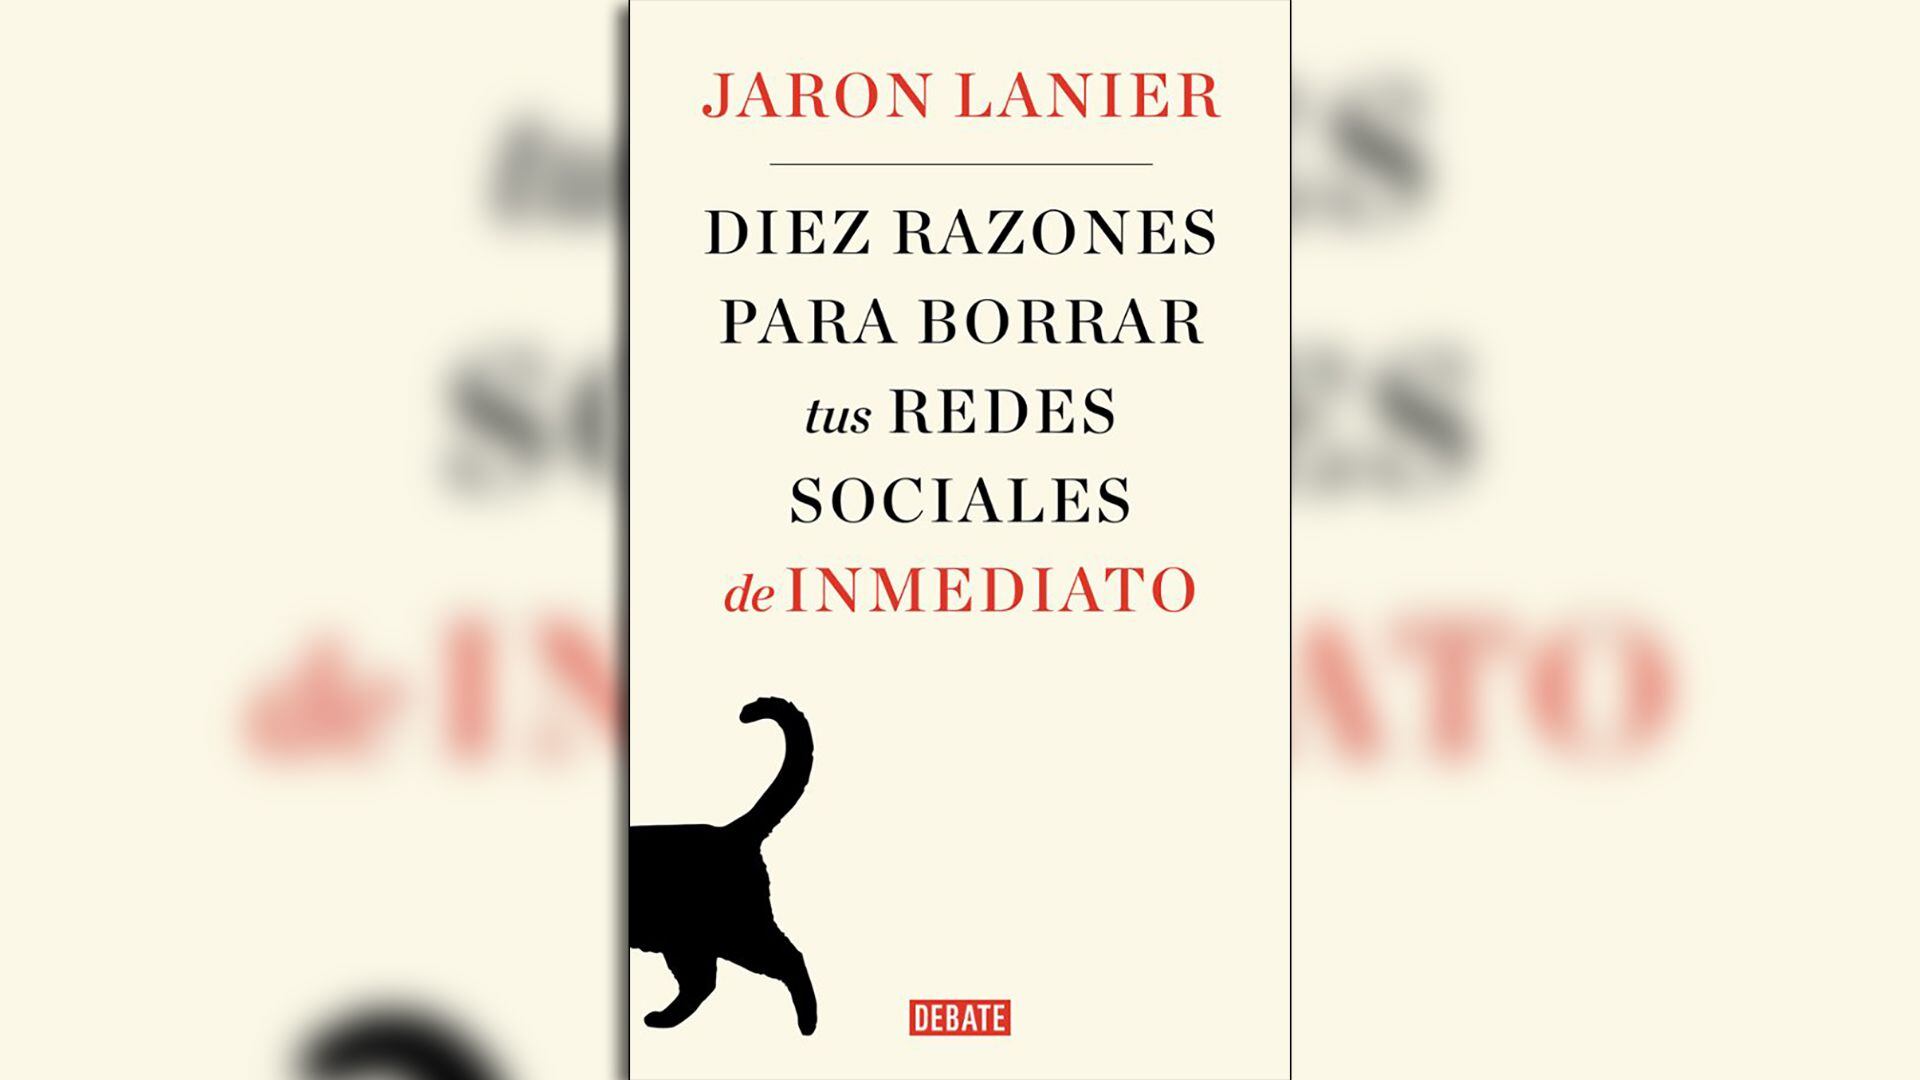 Portada del libro “Diez razones para borrar tus redes sociales de inmediato” de Jaron Lanier
